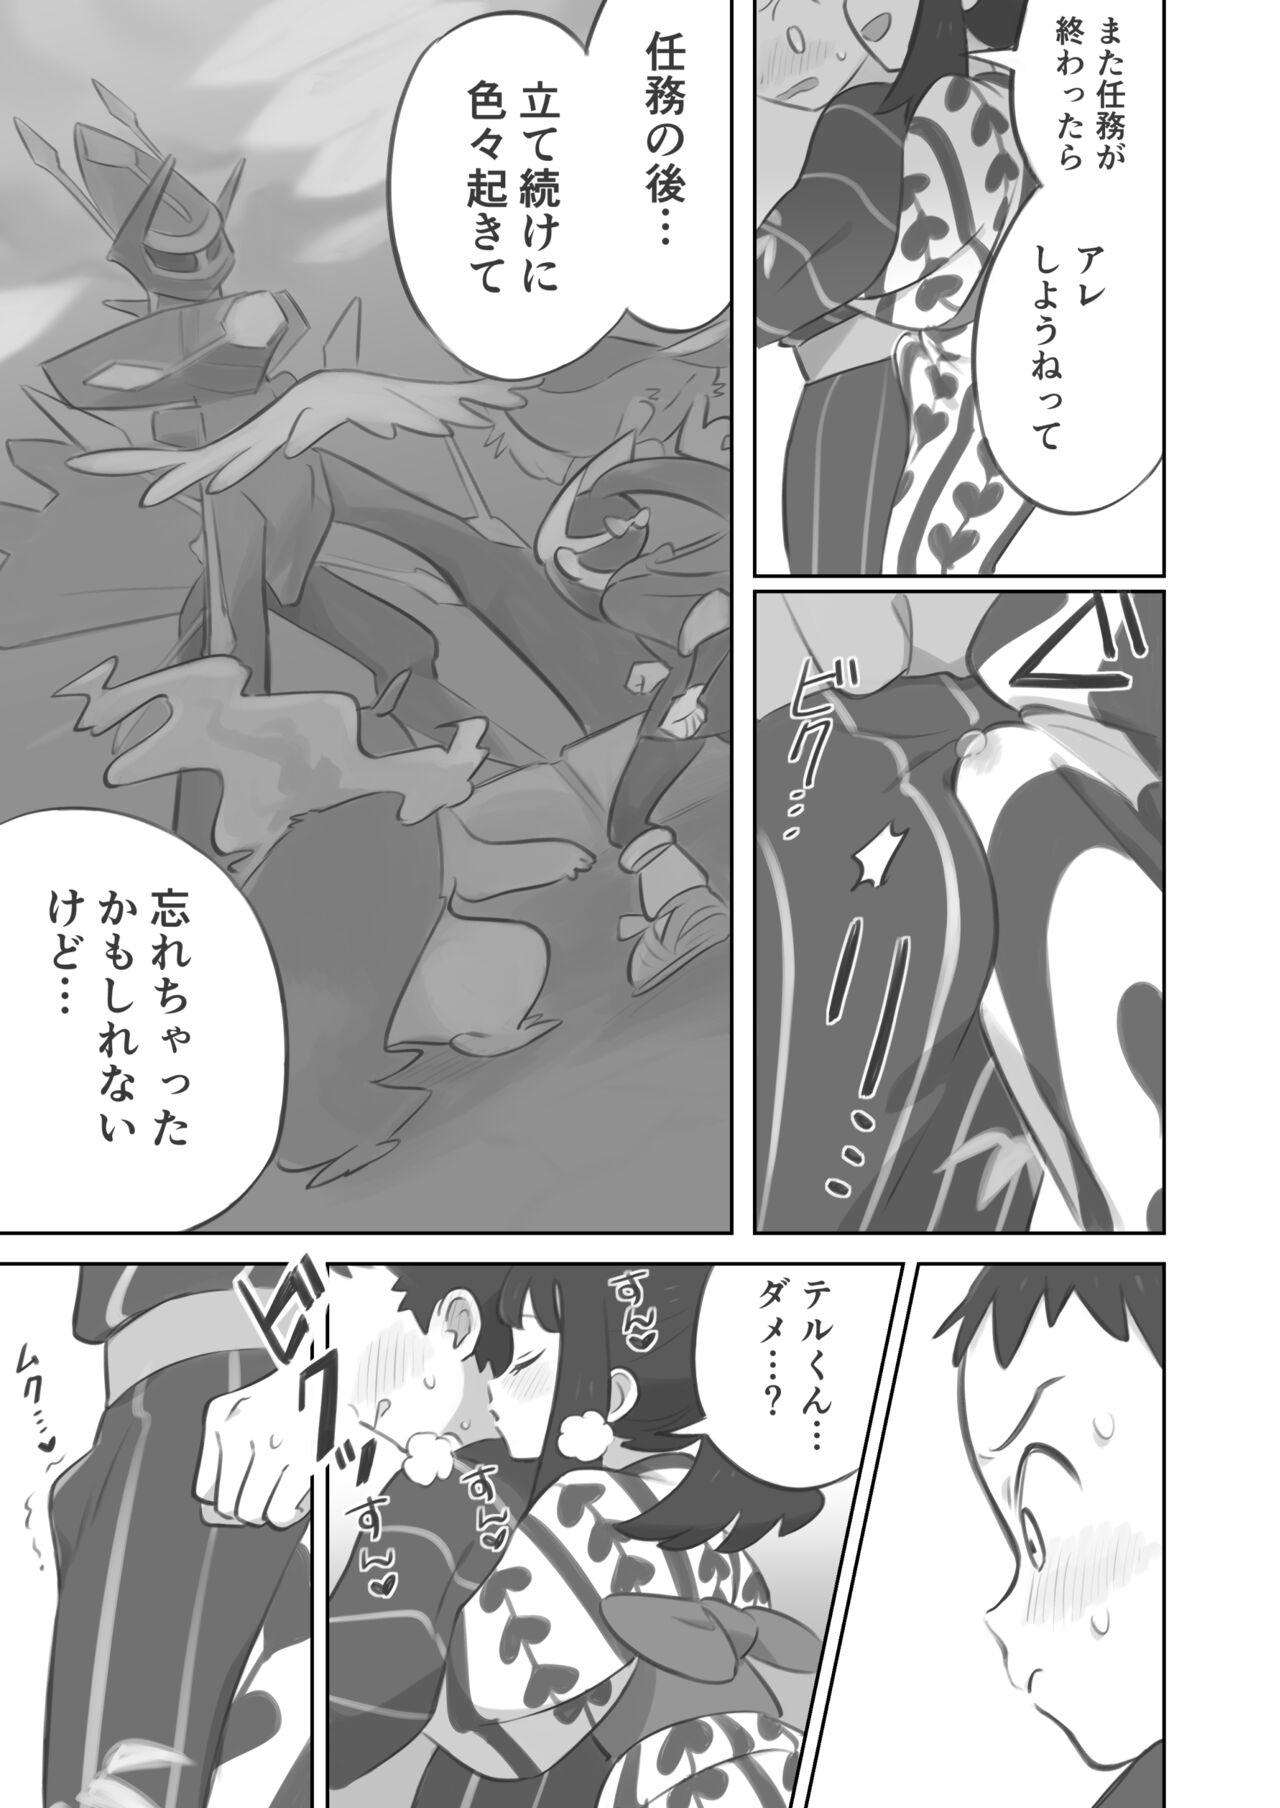 Cornudo Futanari shujinkō-chan ga Teru senpai o horu manga 2 - Pokemon | pocket monsters Bokep - Page 5